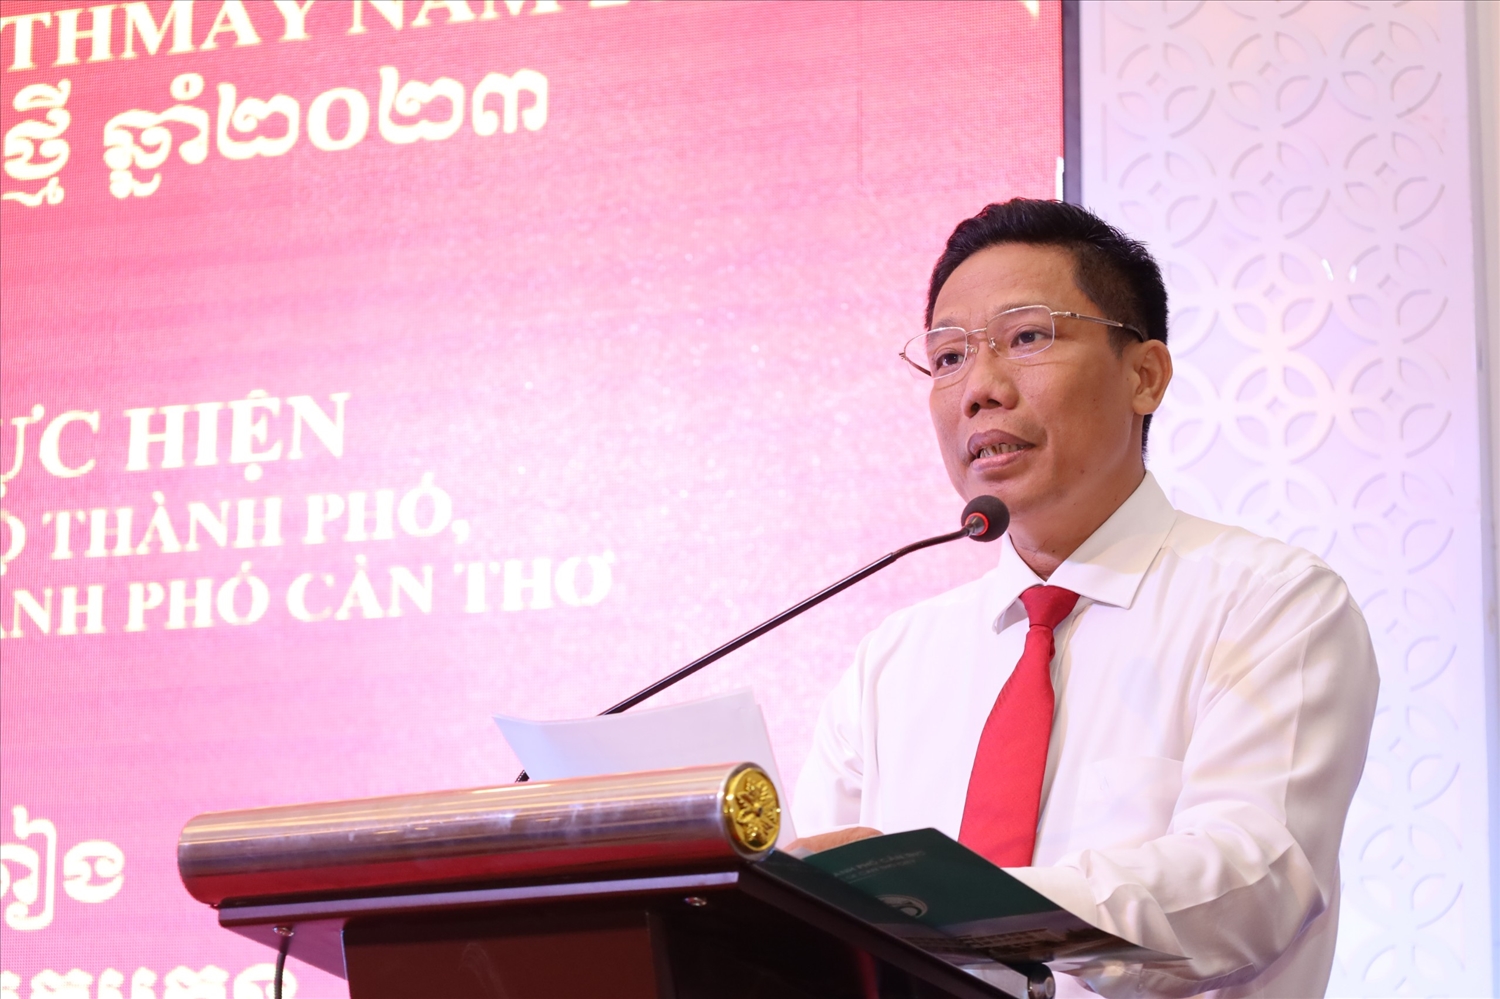  Ông Nguyễn Thực Hiện - Phó chủ UBND TP. Cần Thơ phát biểu chúc mừng tại buổi họp mặt 